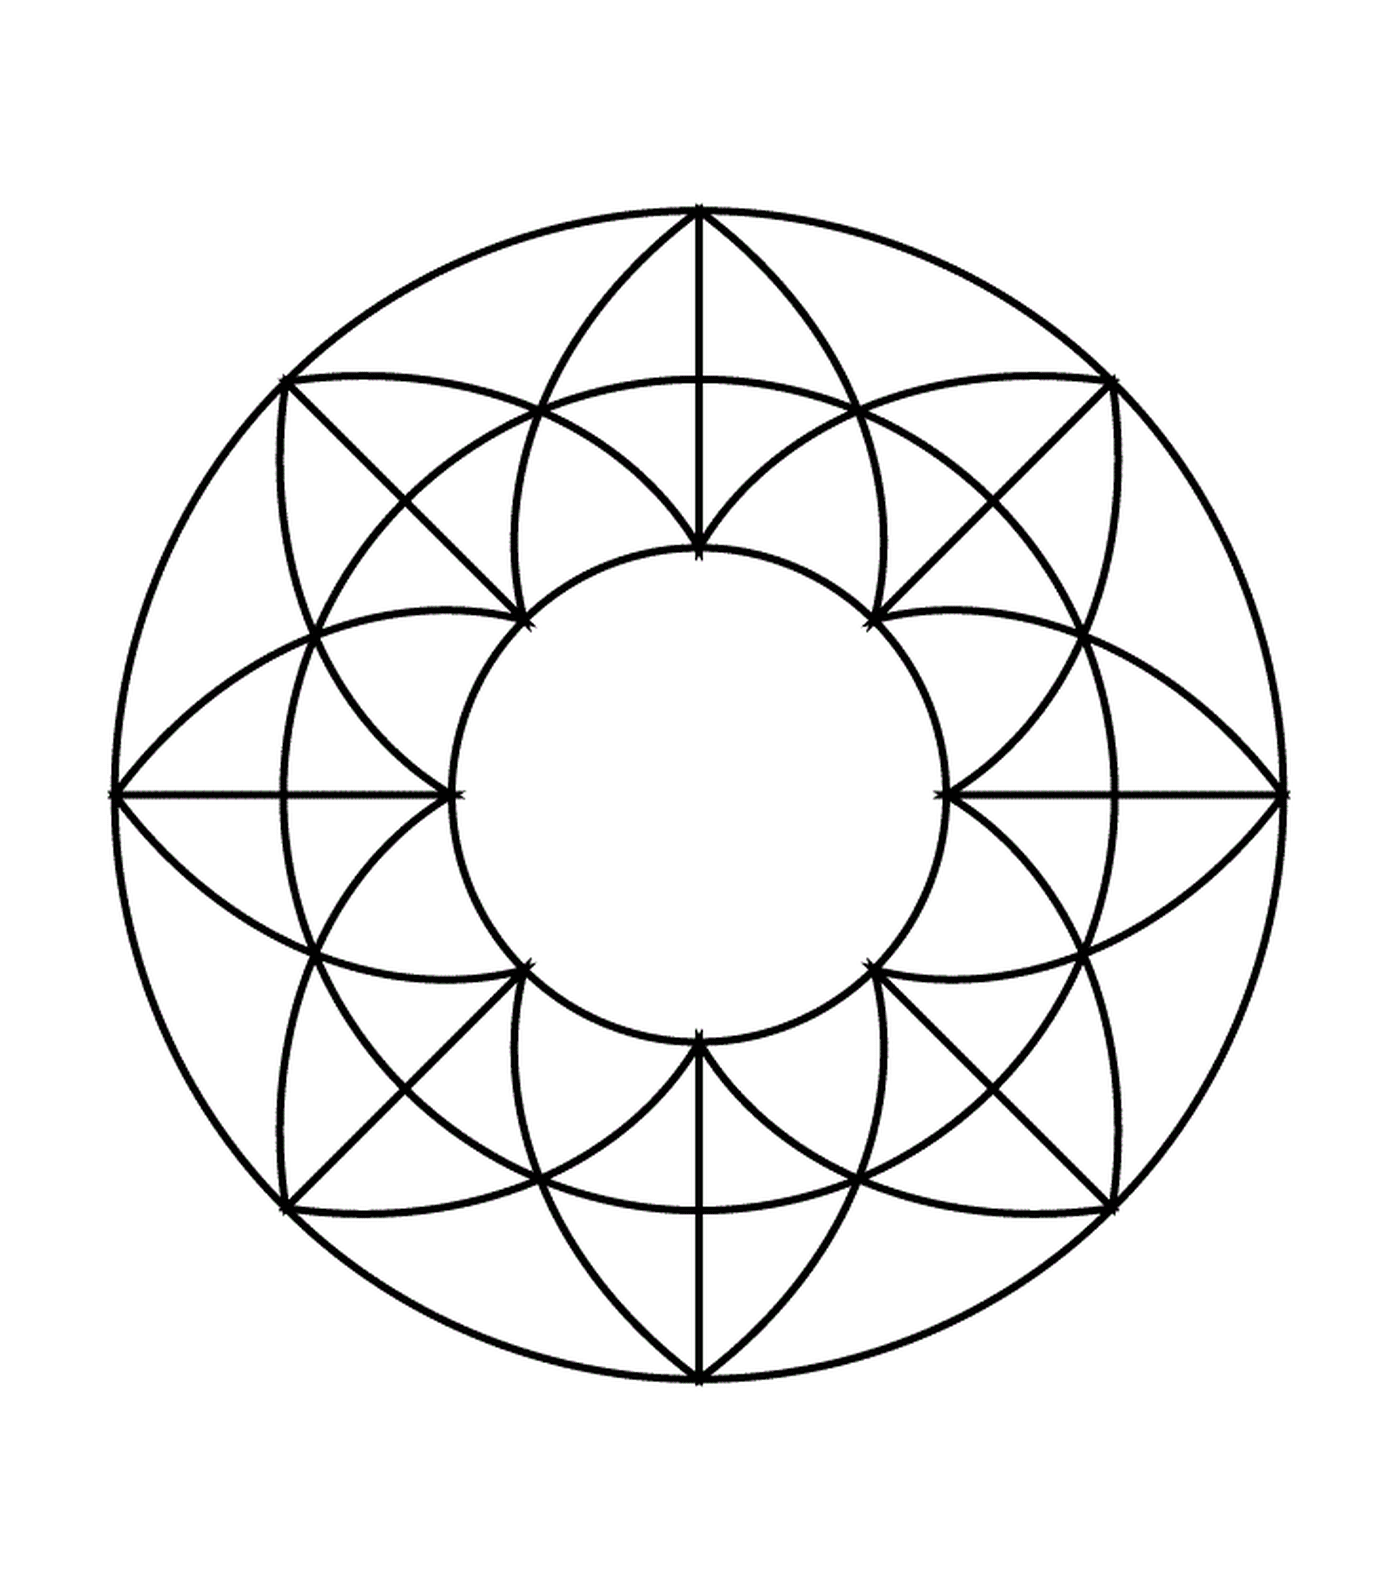   Un cercle avec un motif géométrique à l'intérieur 